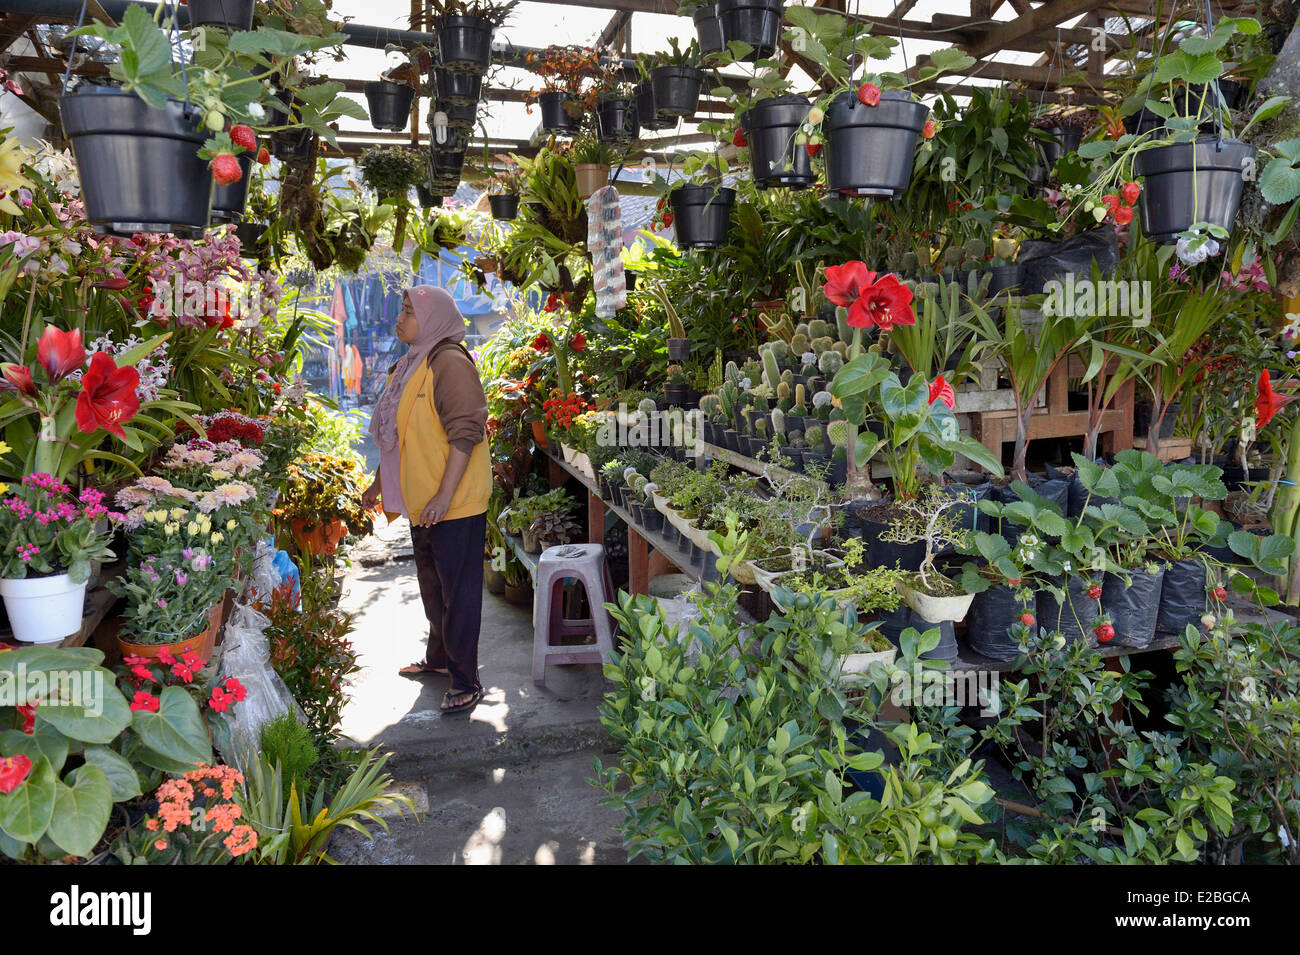 Indonesien, Bali, Bedugul, der Blumenmarkt Stockfoto